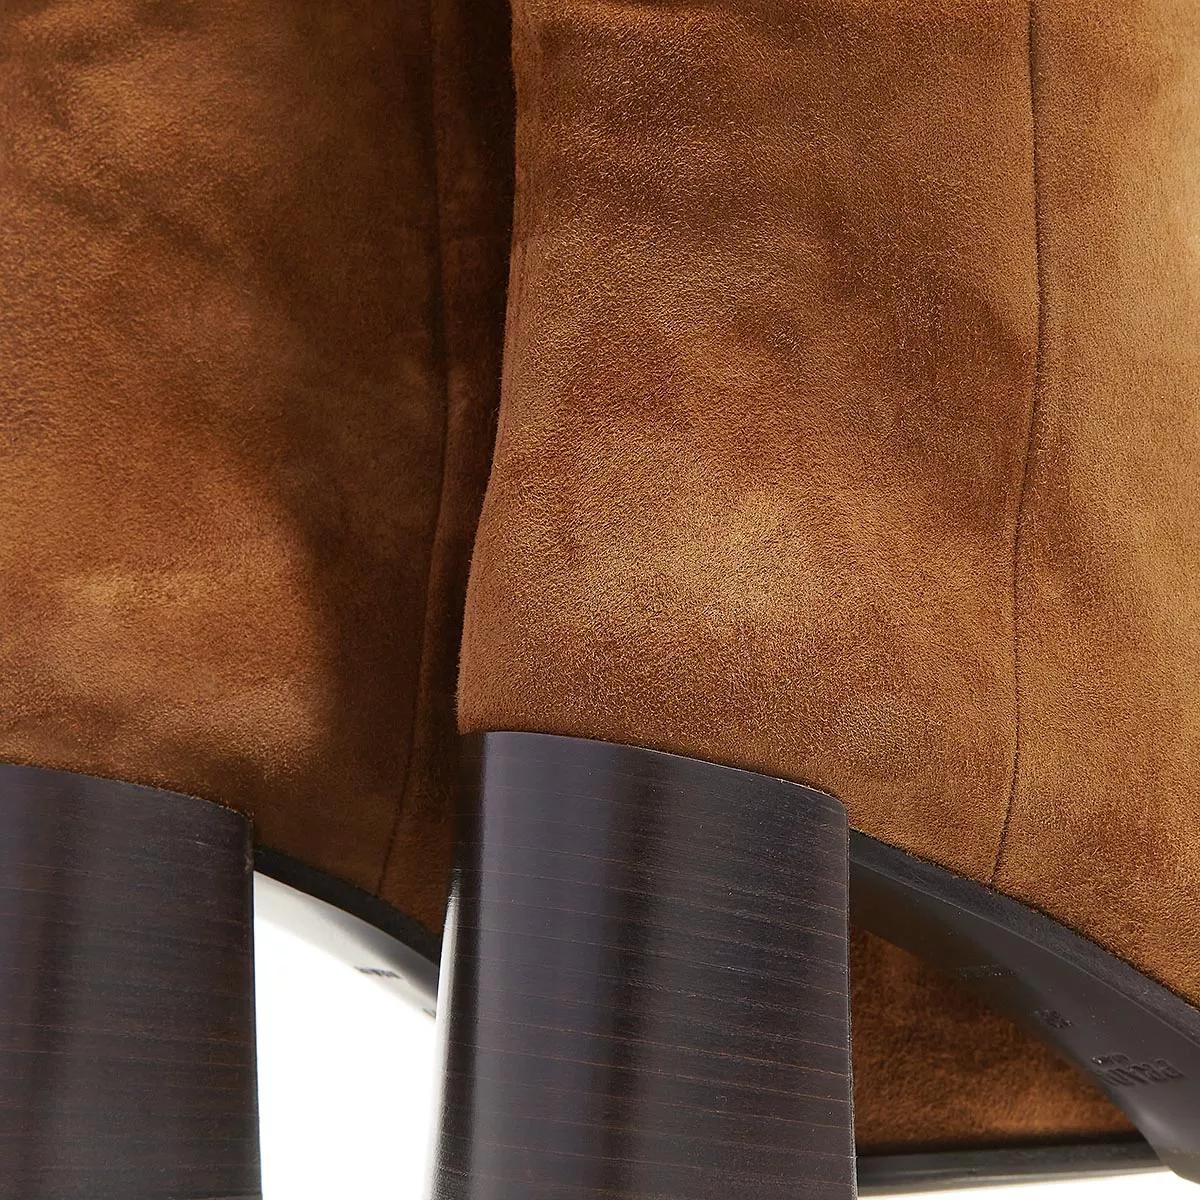 Prada Boots & Stiefeletten - Leather Boots - Gr. 41 (EU) - in Braun - für Damen von Prada